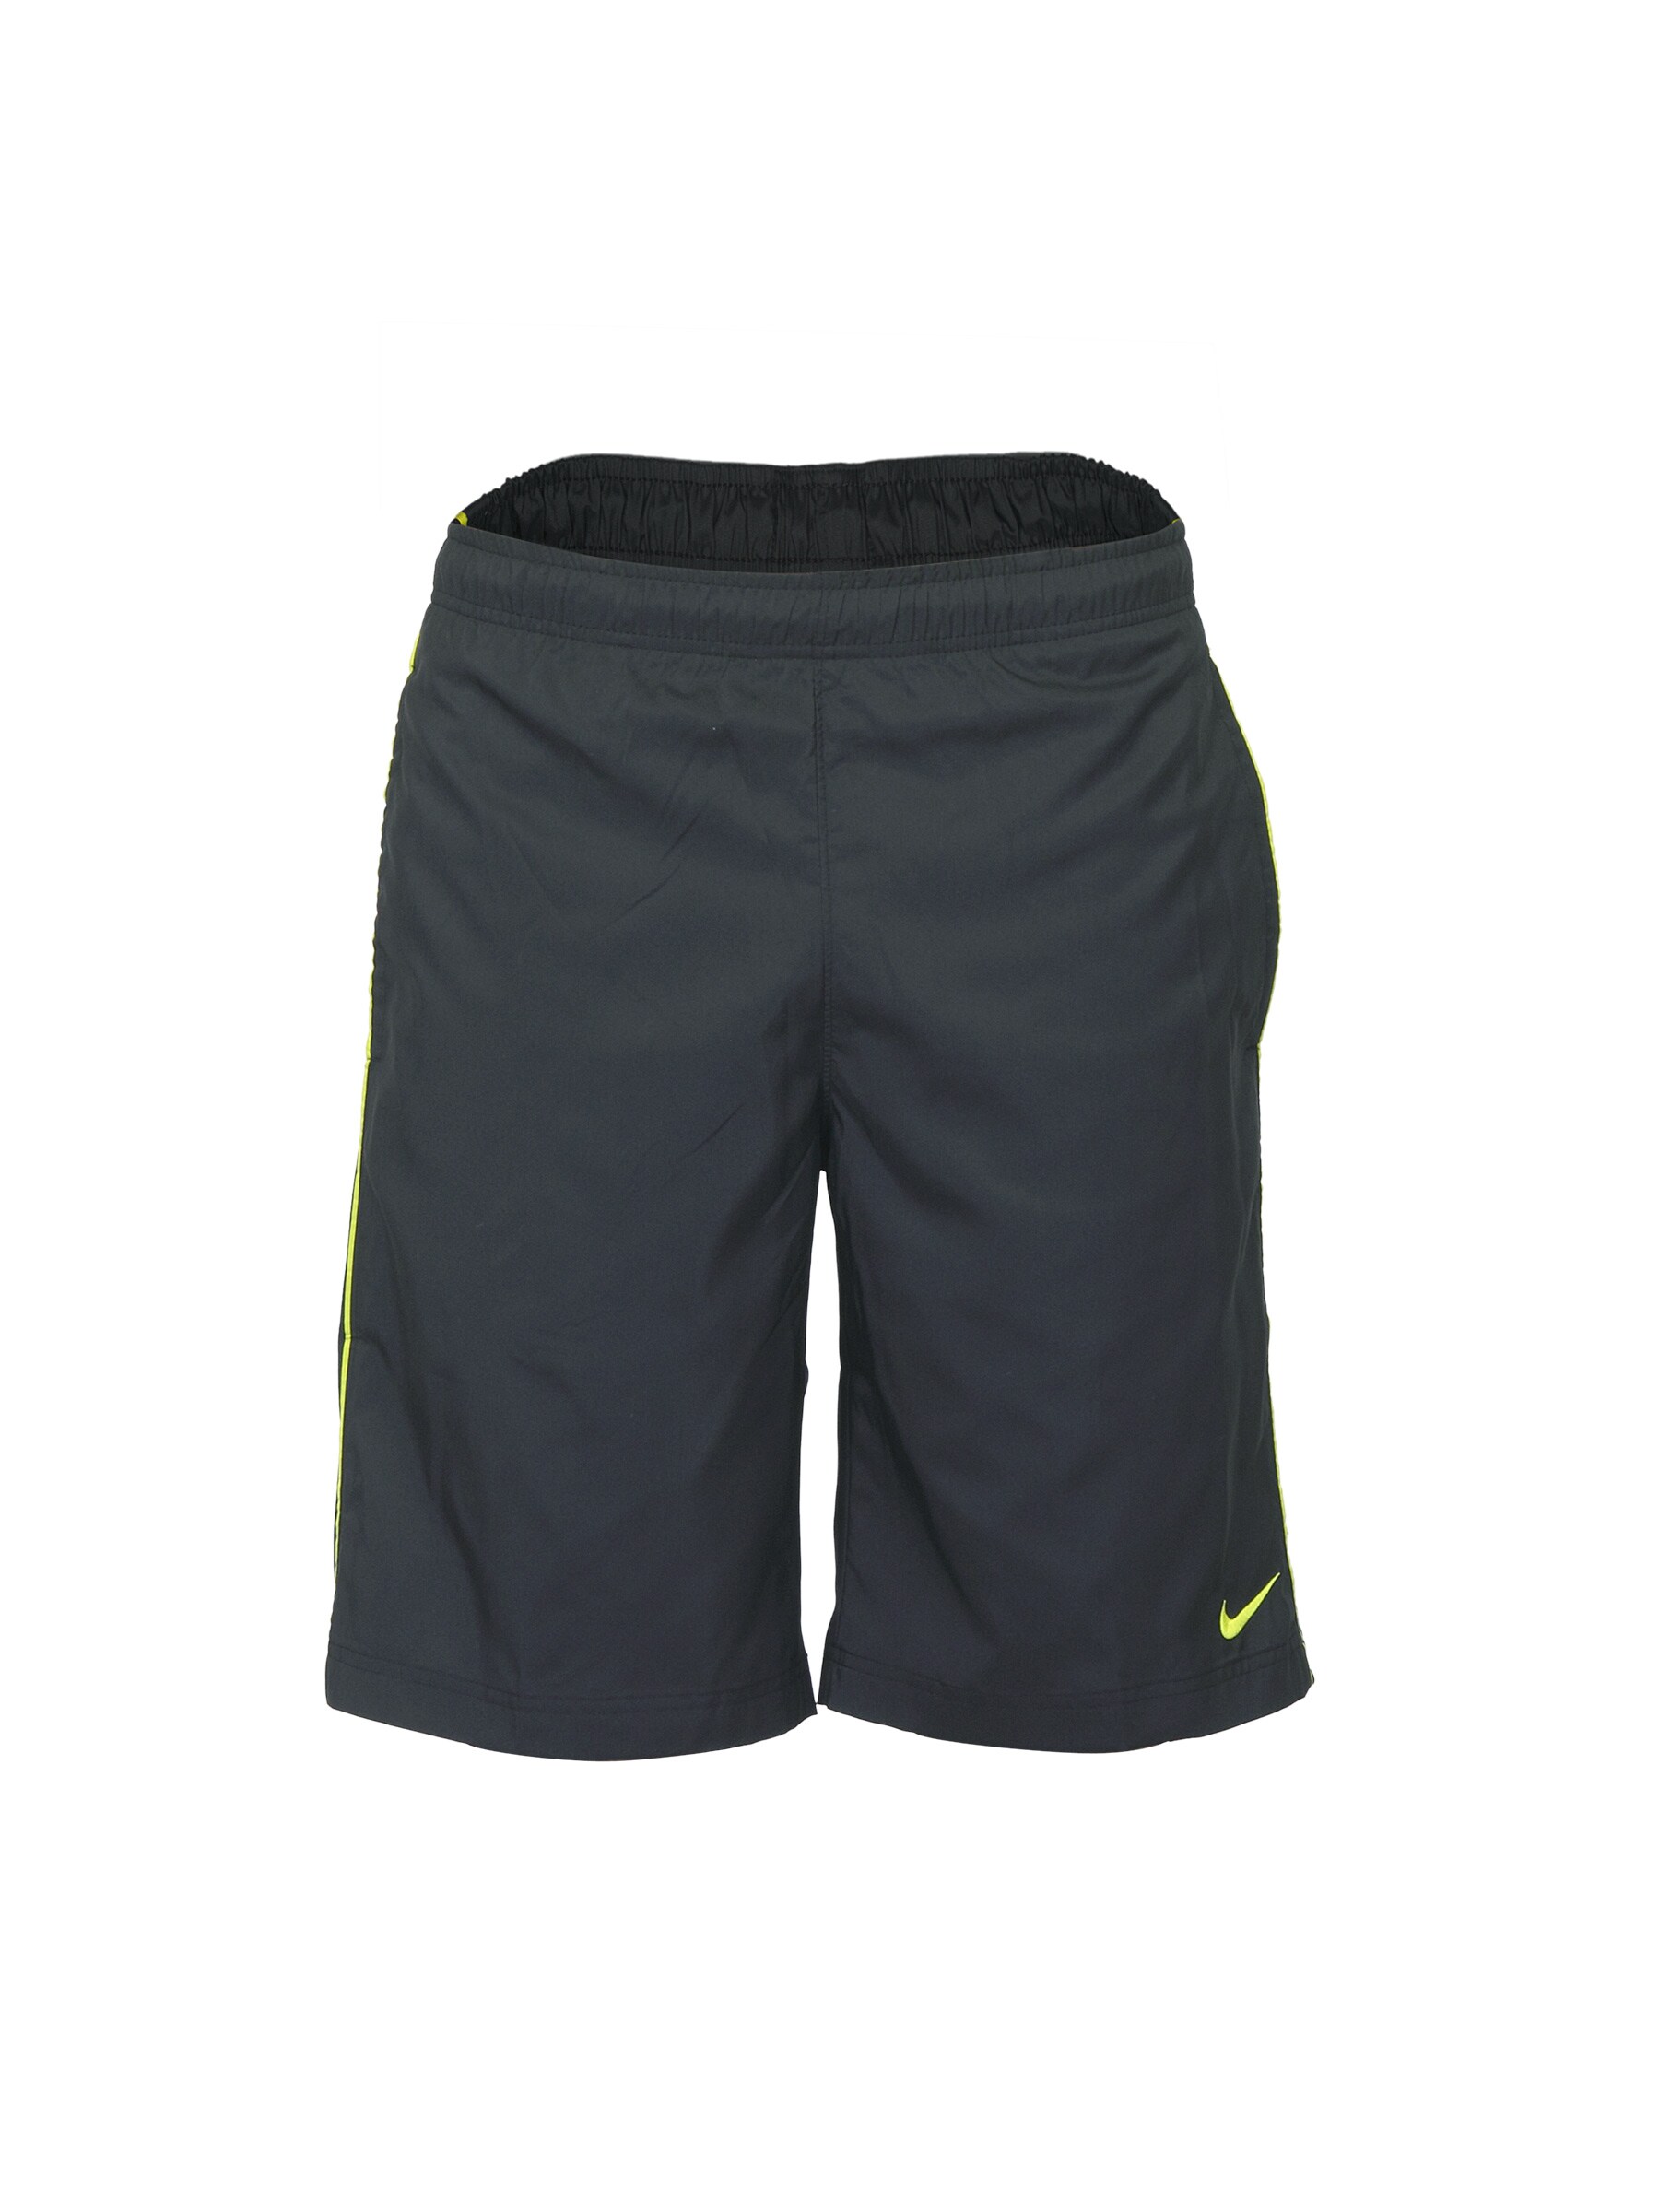 Nike Men Black Shorts